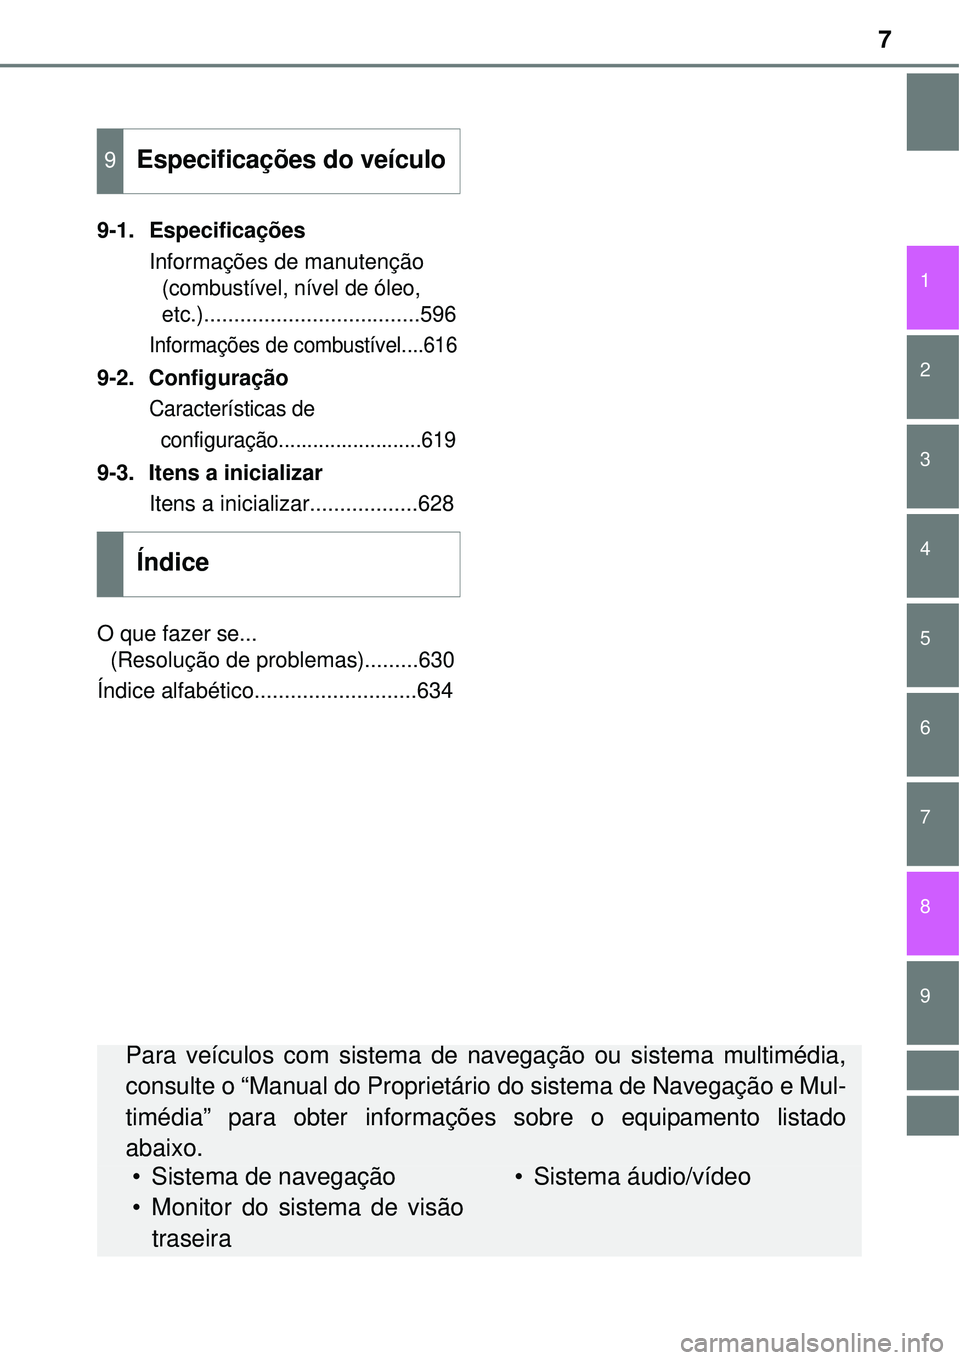 TOYOTA AVENSIS 2015  Manual de utilização (in Portuguese) 7
1
8 6 5
4
3
2
9
7
9-1. Especificações
Informações de manutenção 
(combustível, nível de óleo, 
etc.)
....................................596
Informações de combustível....616
9-2. Config